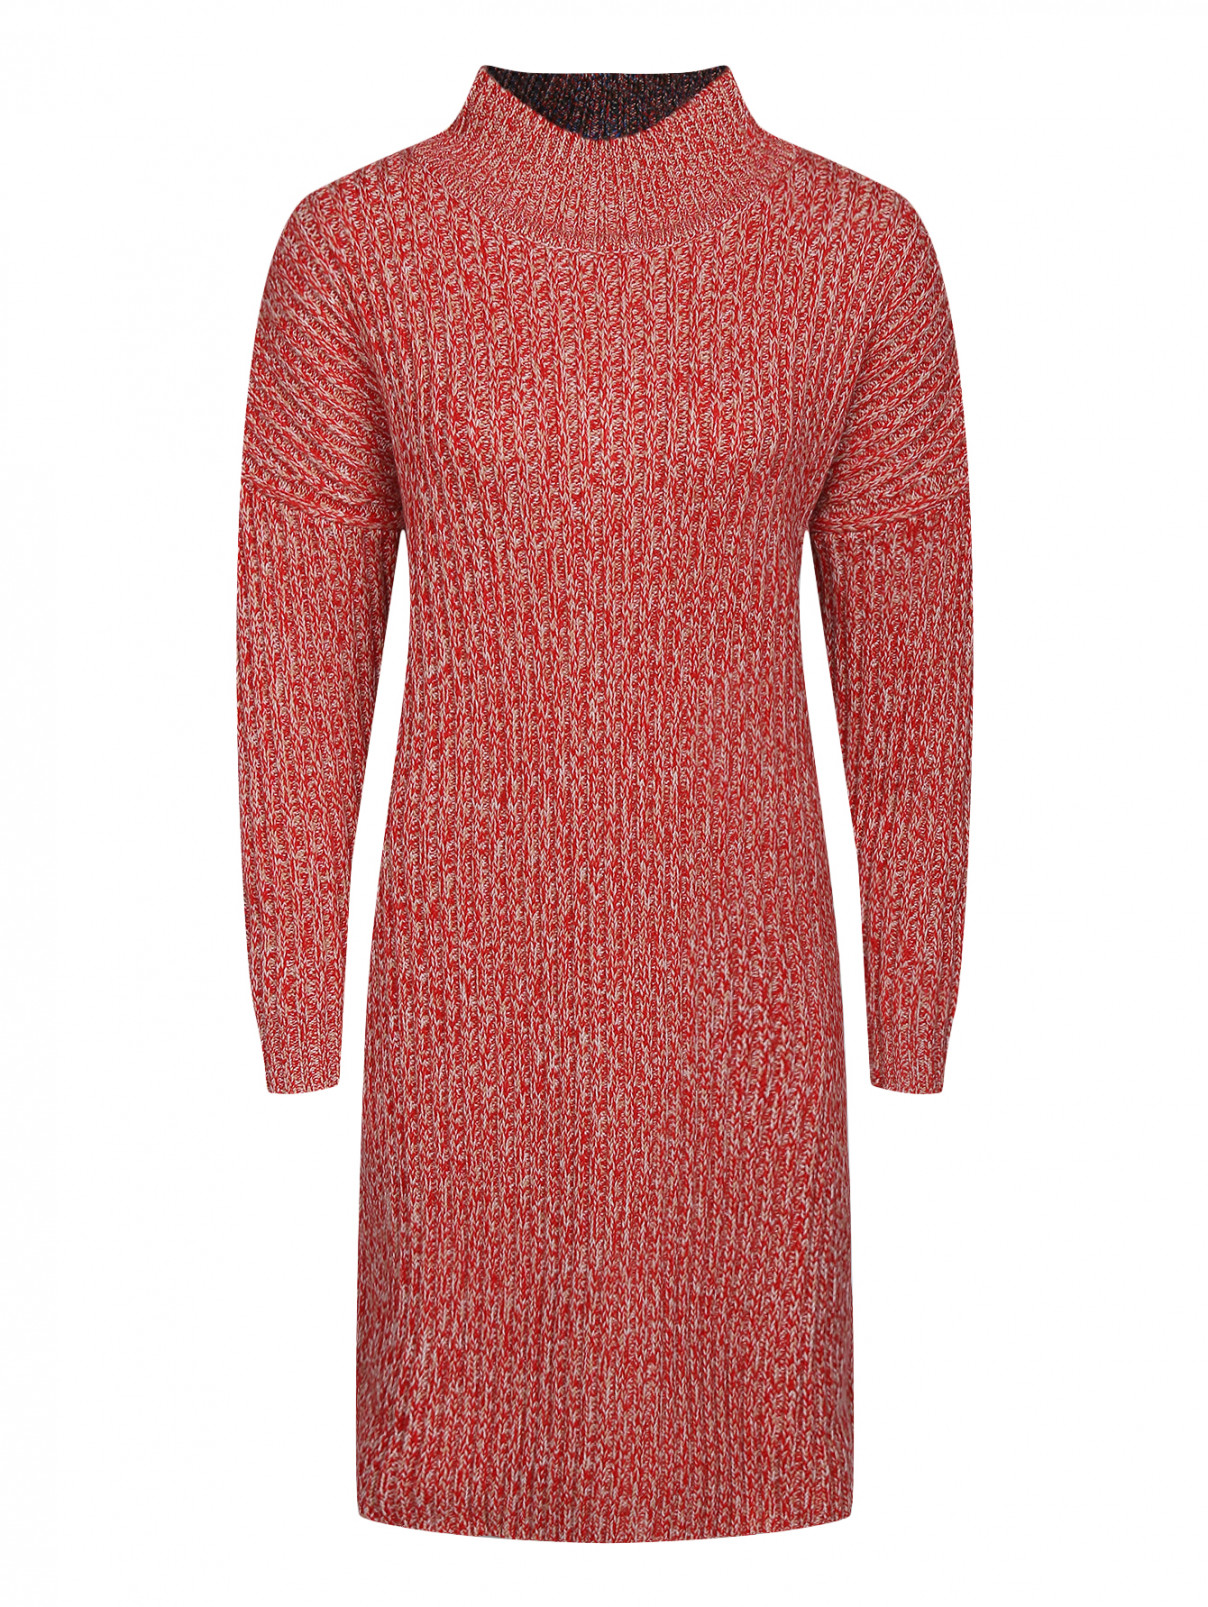 Трикотажное платье из шерсти Jil Sander Navy  –  Общий вид  – Цвет:  Красный